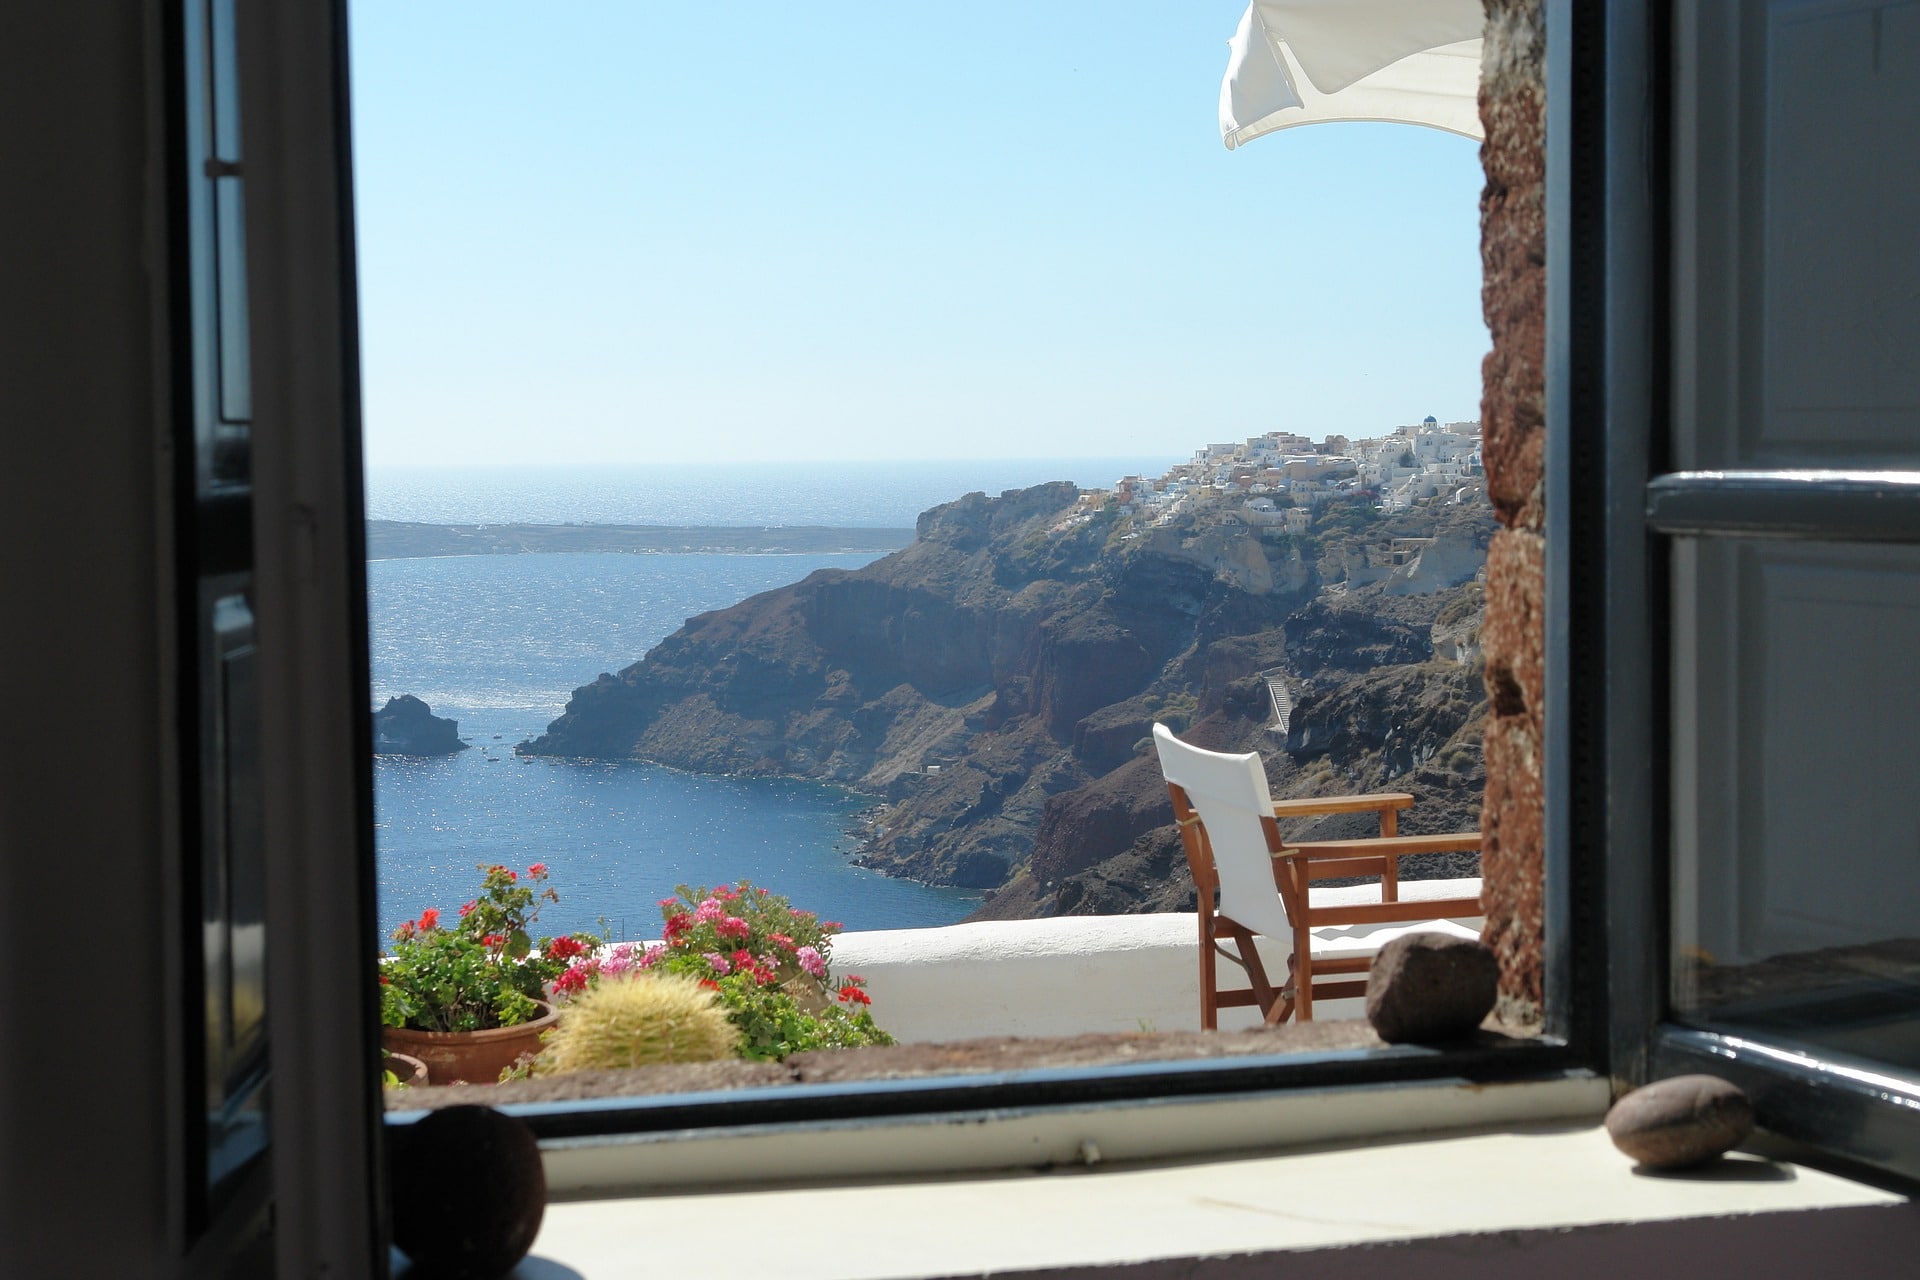 Séjourner à Santorin : choisir un hôtel, une location ou un appart’hôtel ?